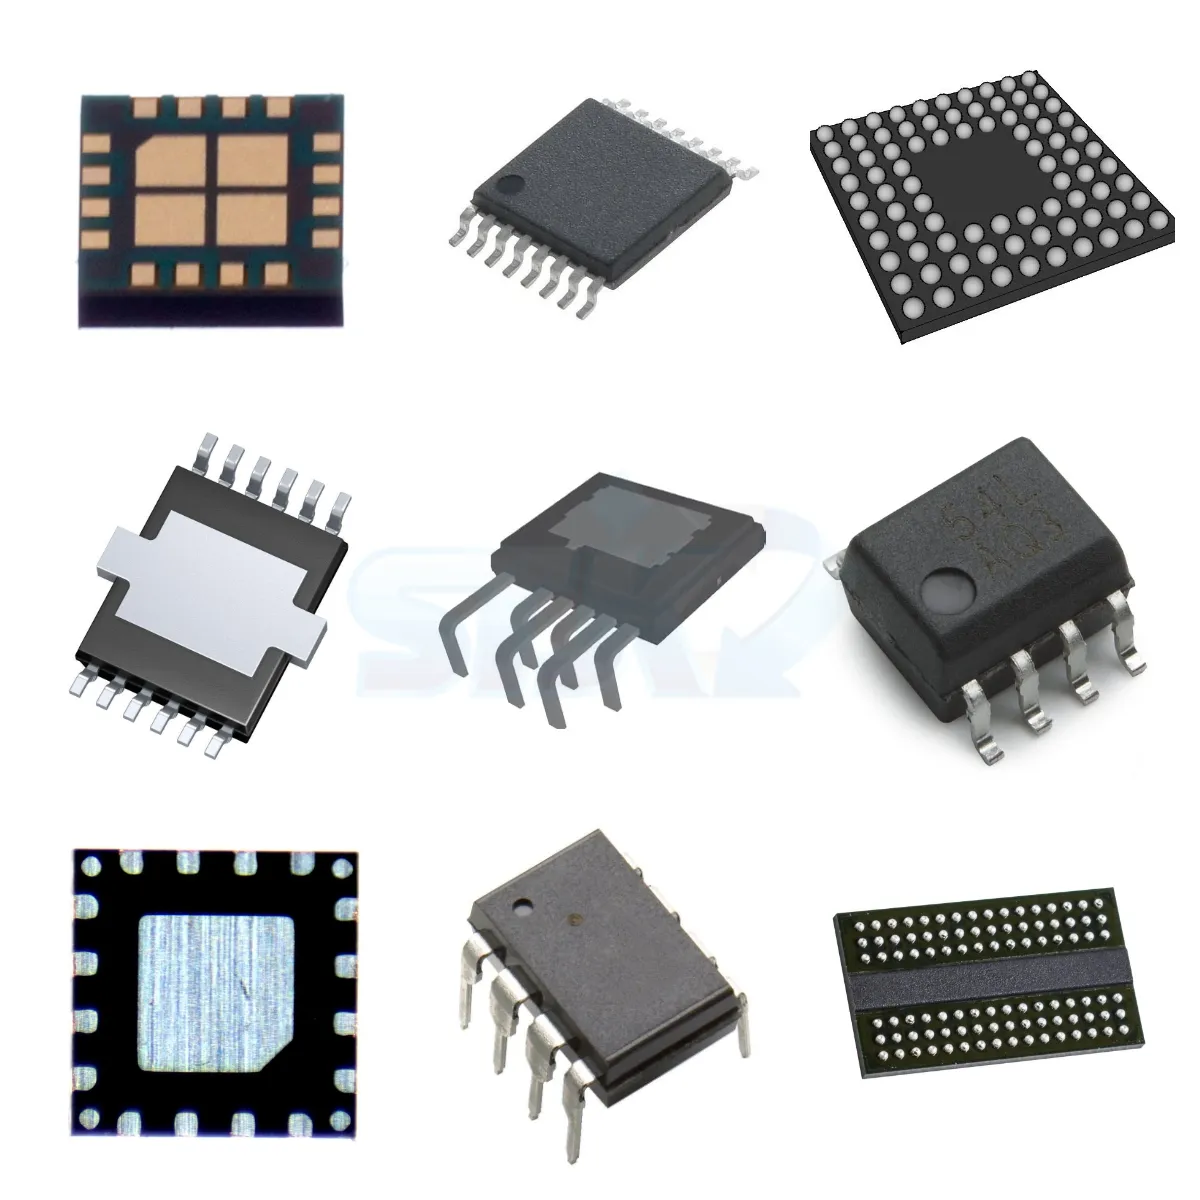 Componentes electrónicos originales de Shenzhen IC max7219 matriz de puntos